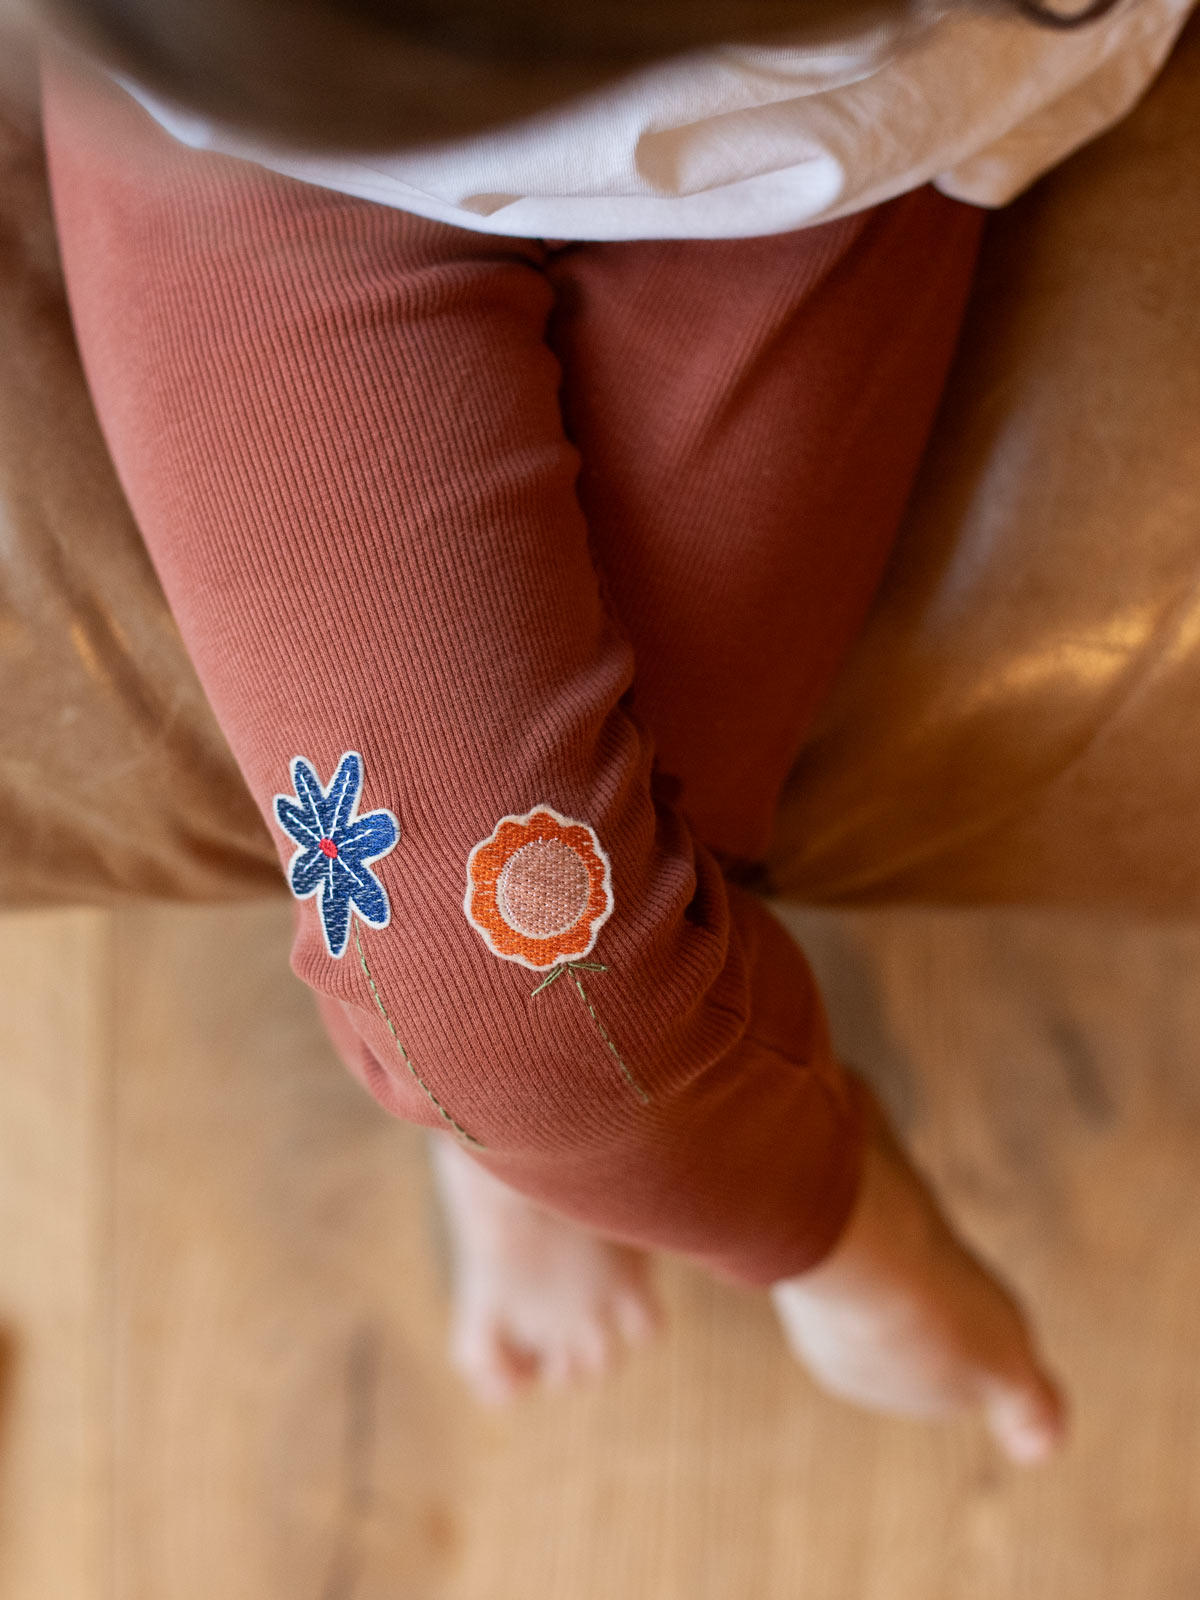 Kind trägt eine rostfarbene ripp leggings und darauf sind Blumen patches in blau und orange mit gestickten grünen Blütenstängeln